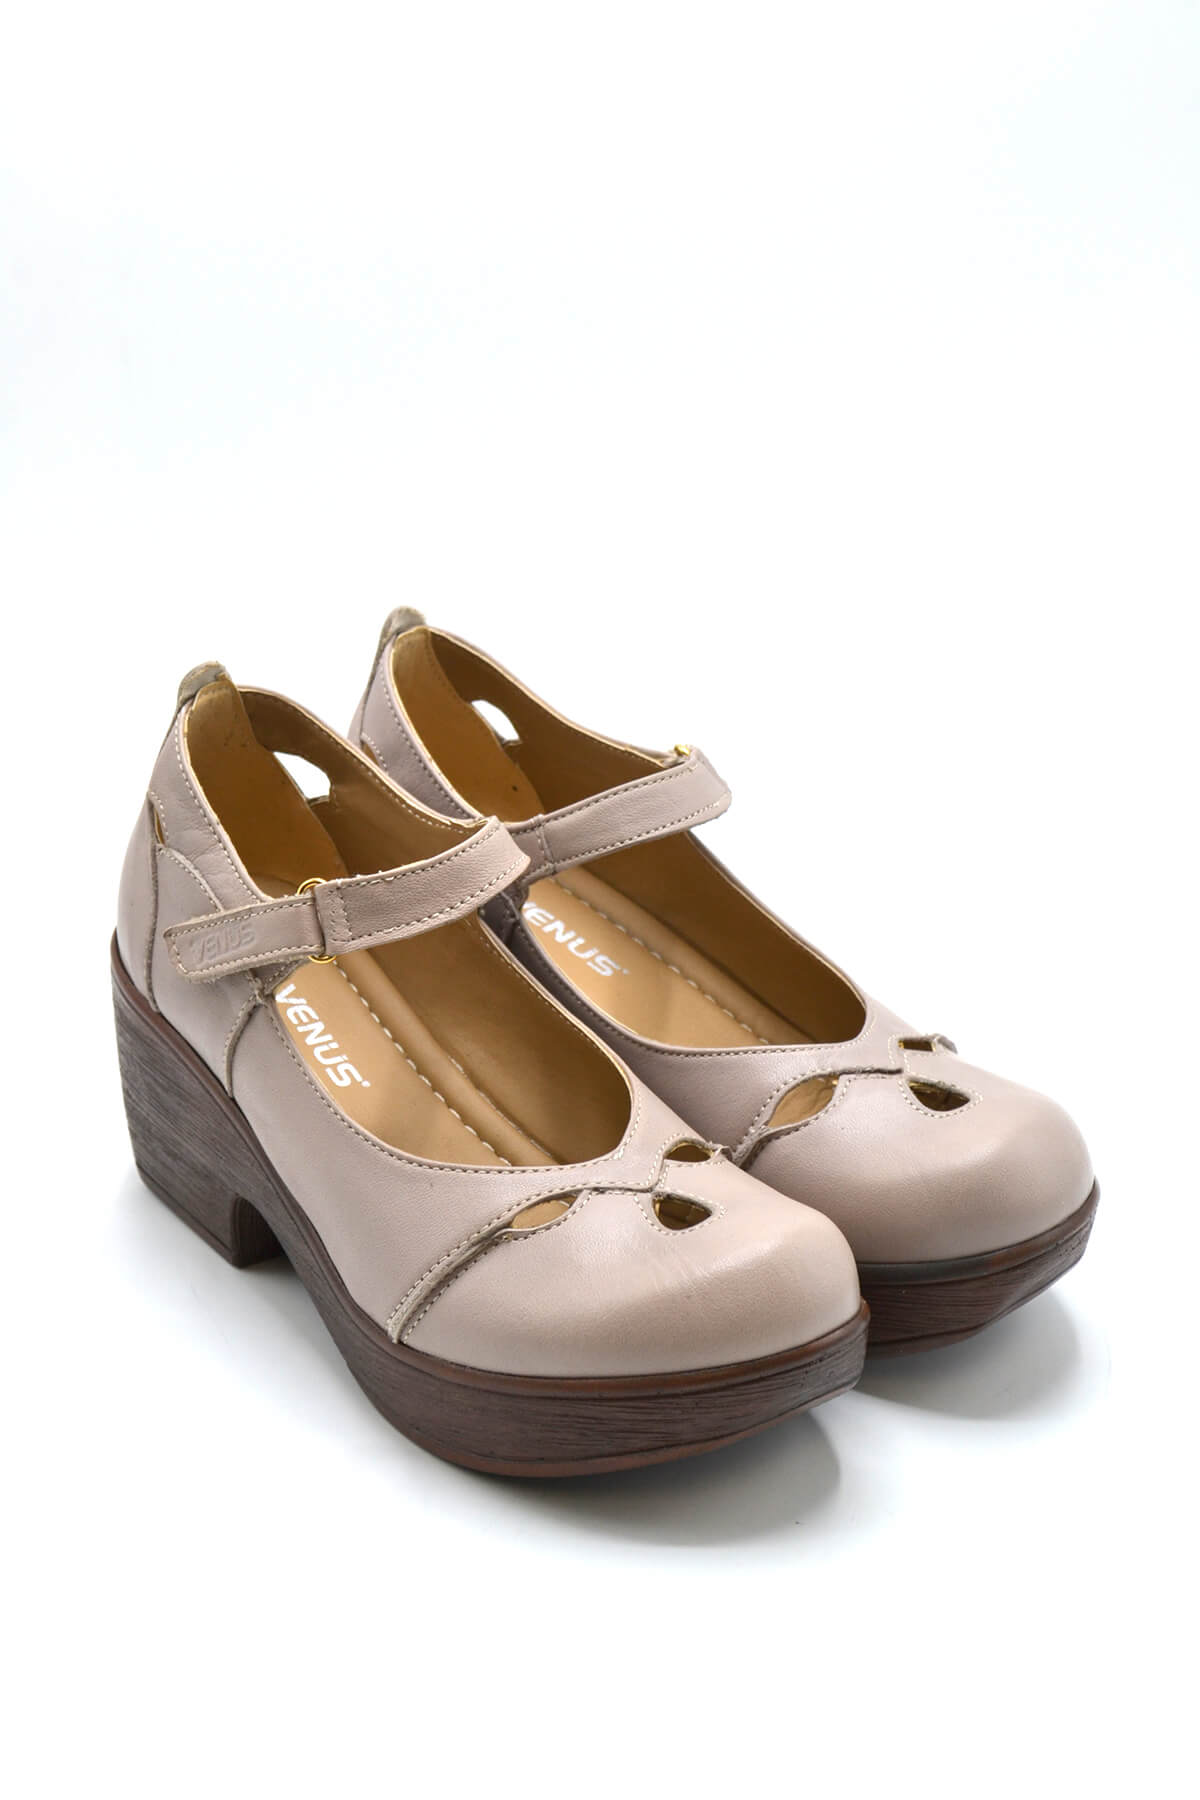 Kadın Apartman Topuk Deri Ayakkabı Vizon 1912501